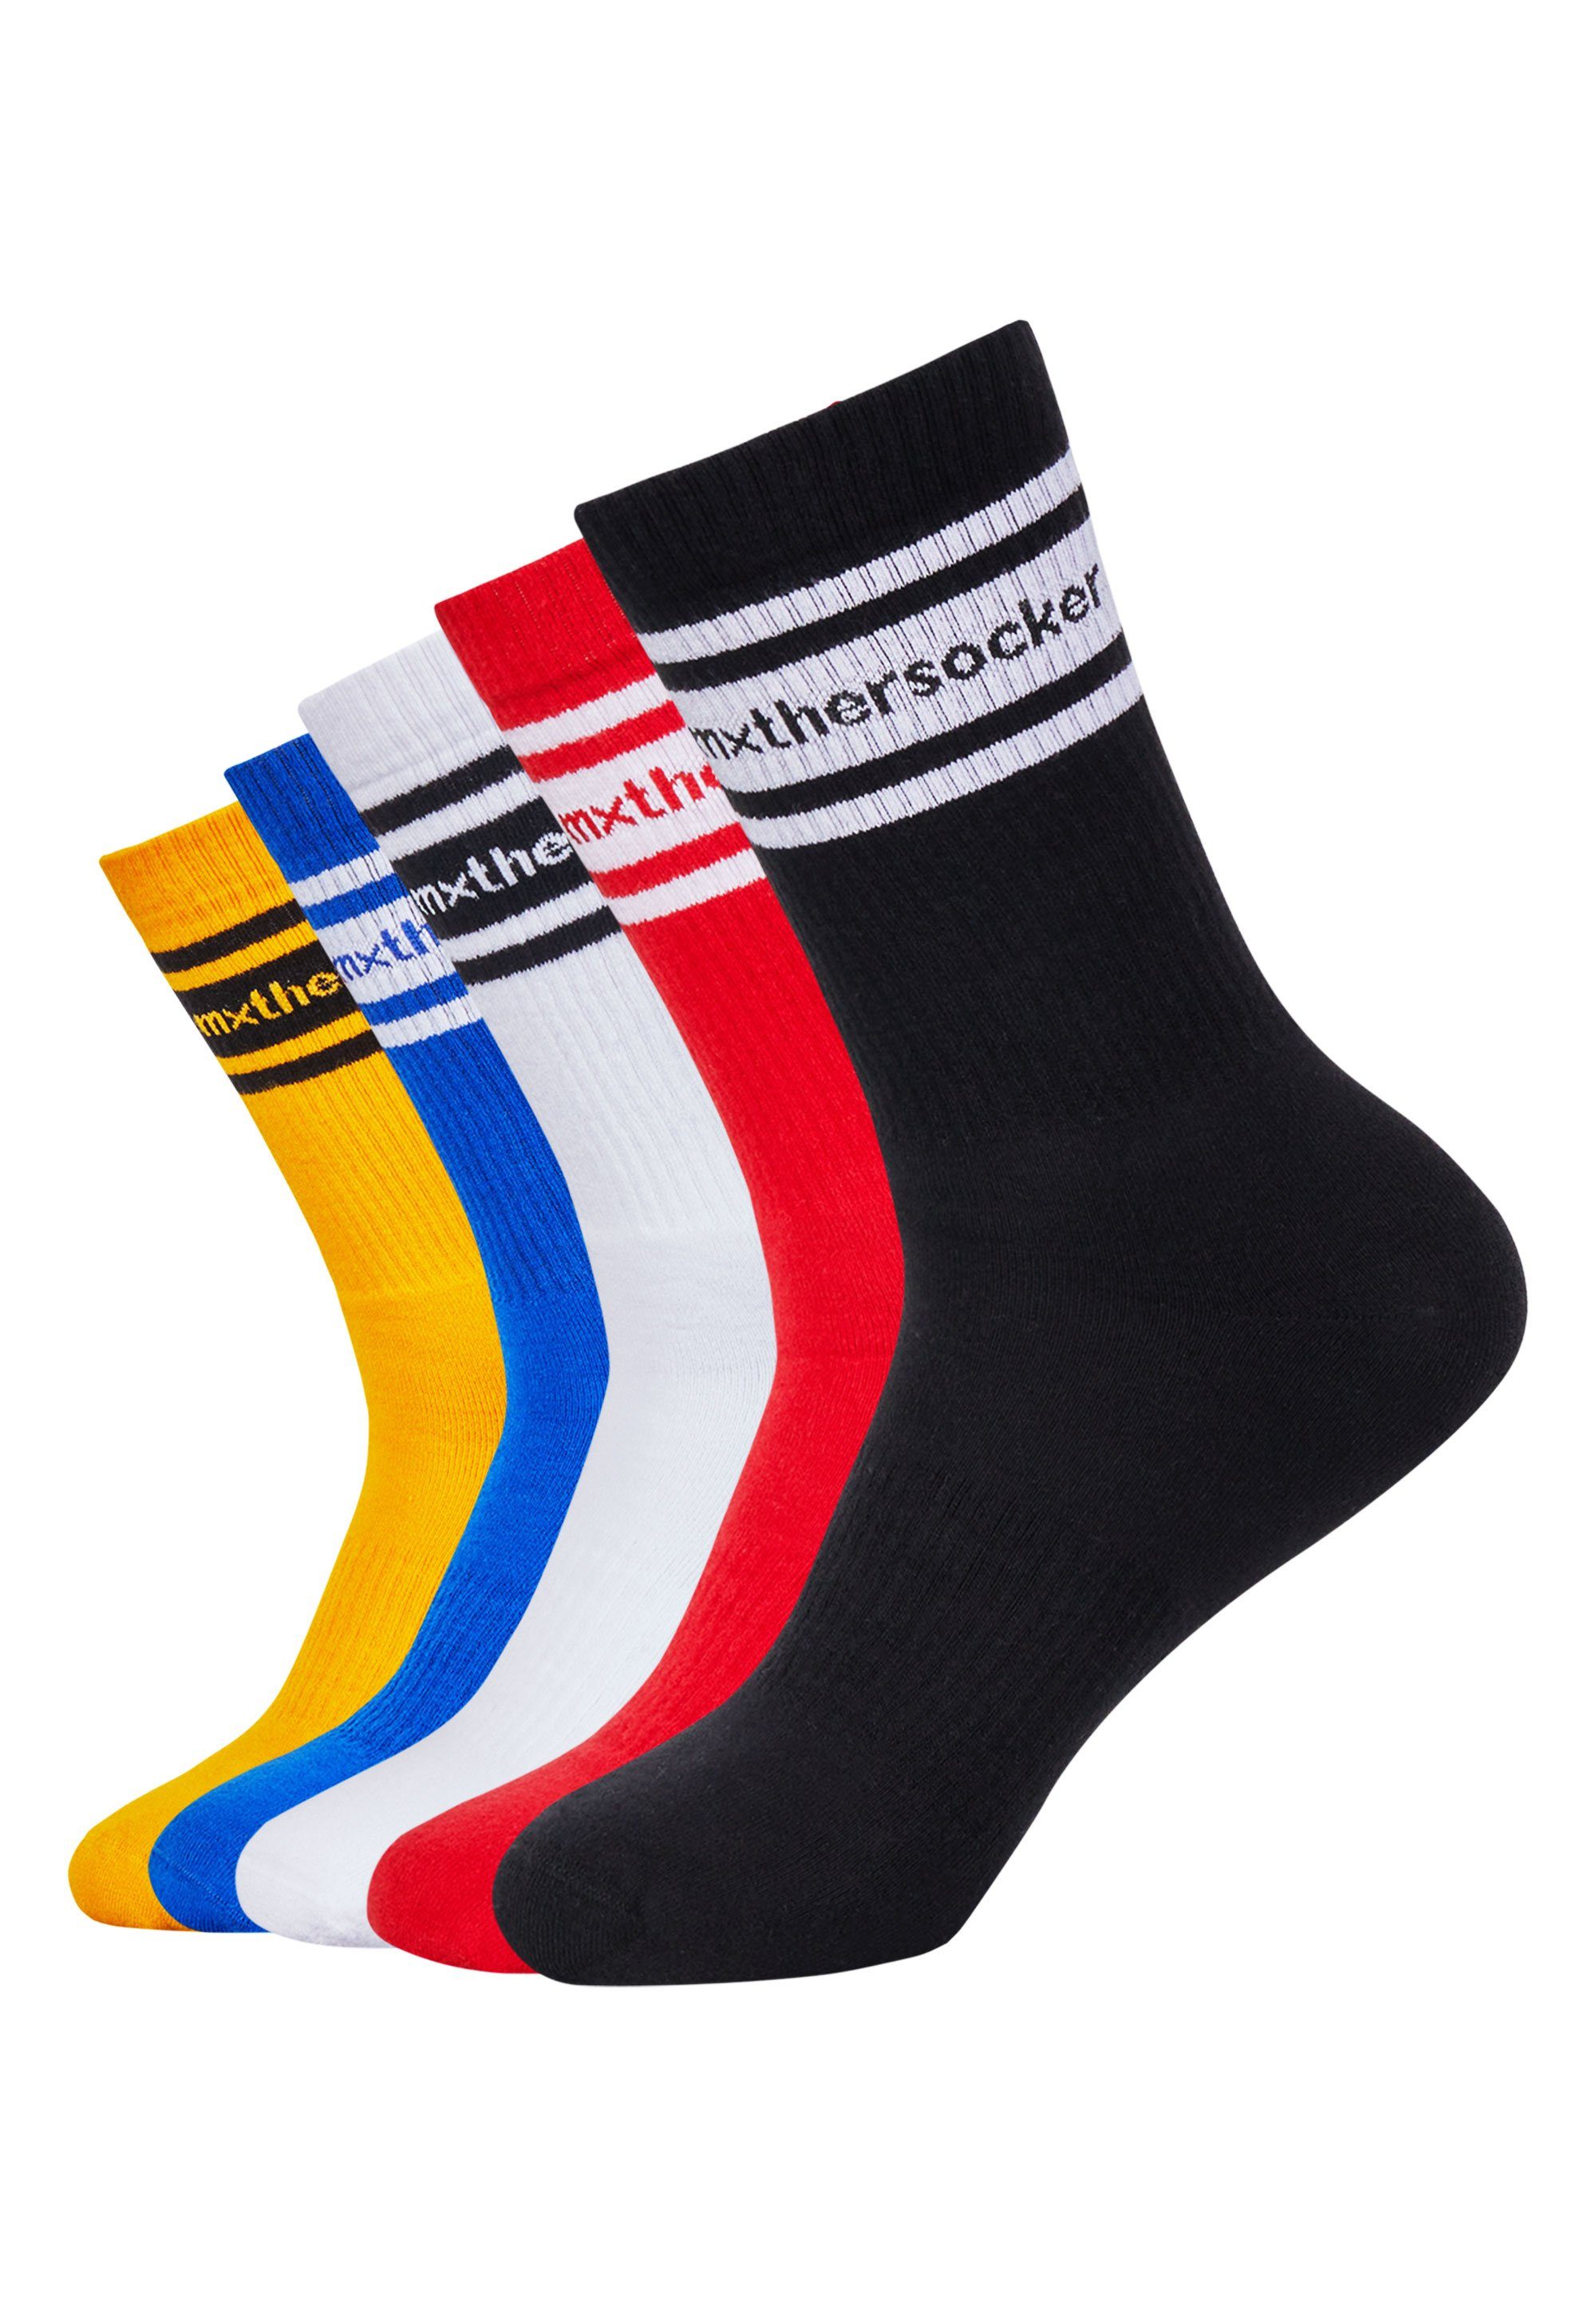 Socken - CLASSIC mit EIGHTY Markenschriftzug trendigem Mxthersocker EIGHT (5-Paar)